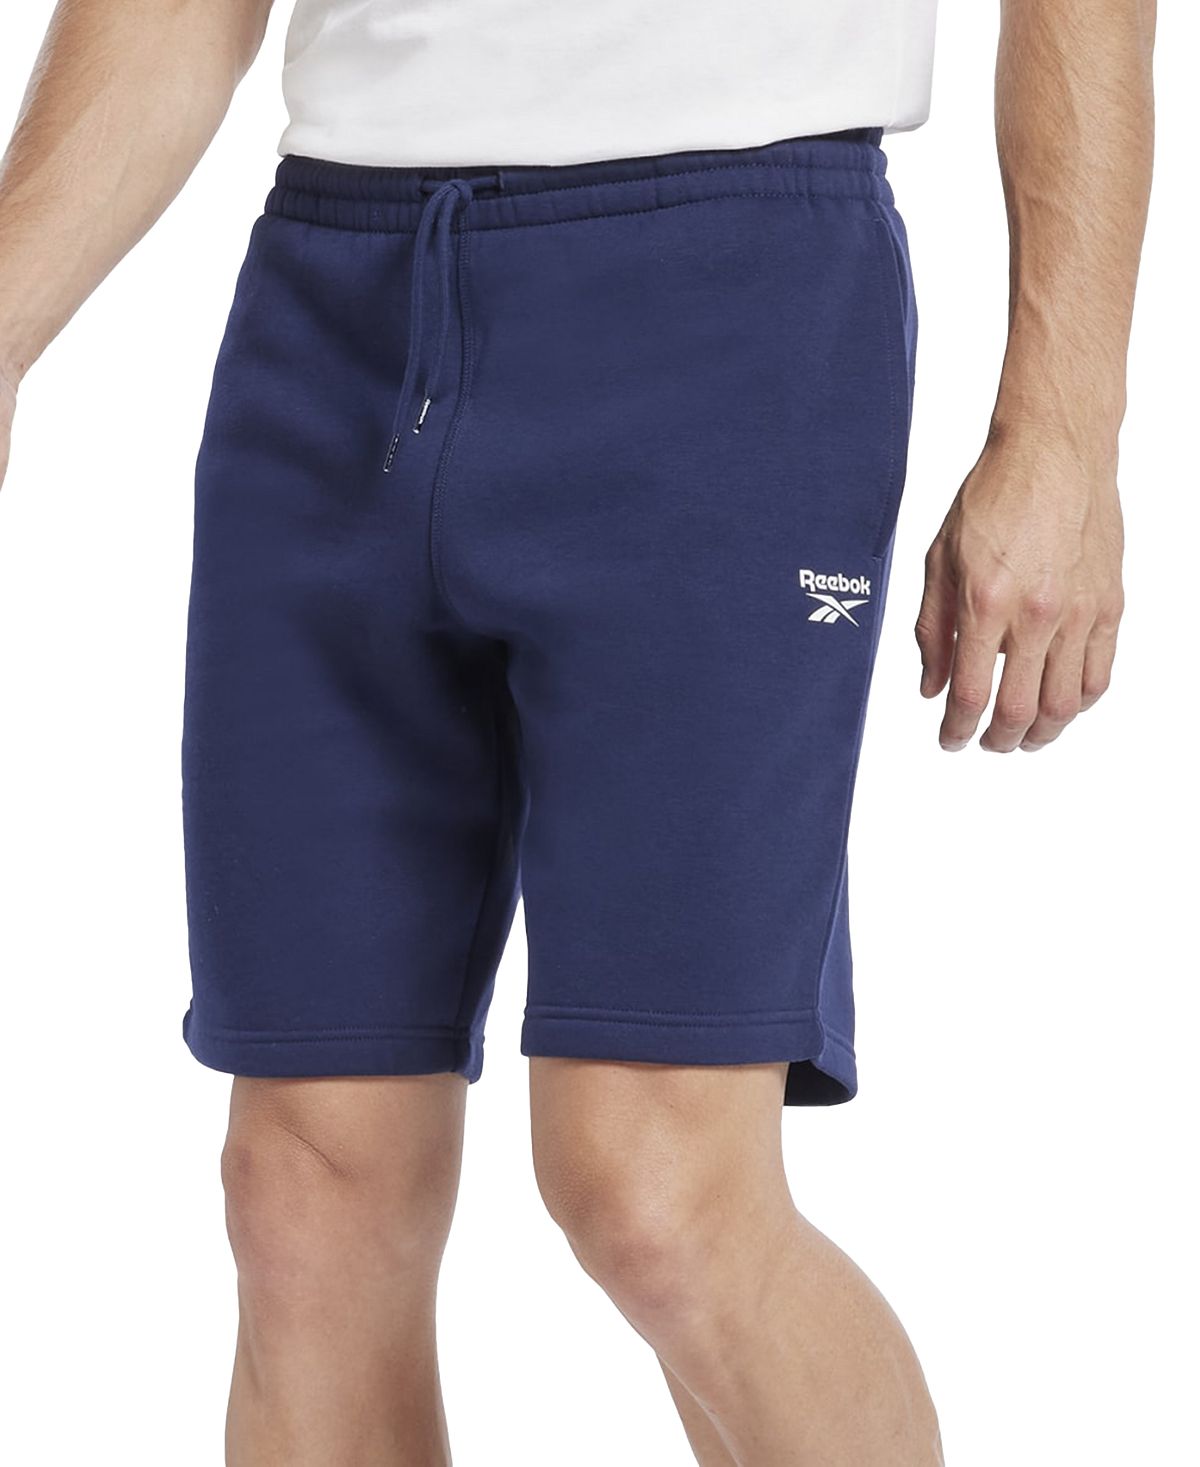 Мужские спортивные шорты классического кроя Identity с логотипом Reebok шорты reebok reebok identity energy fleece short размер m синий